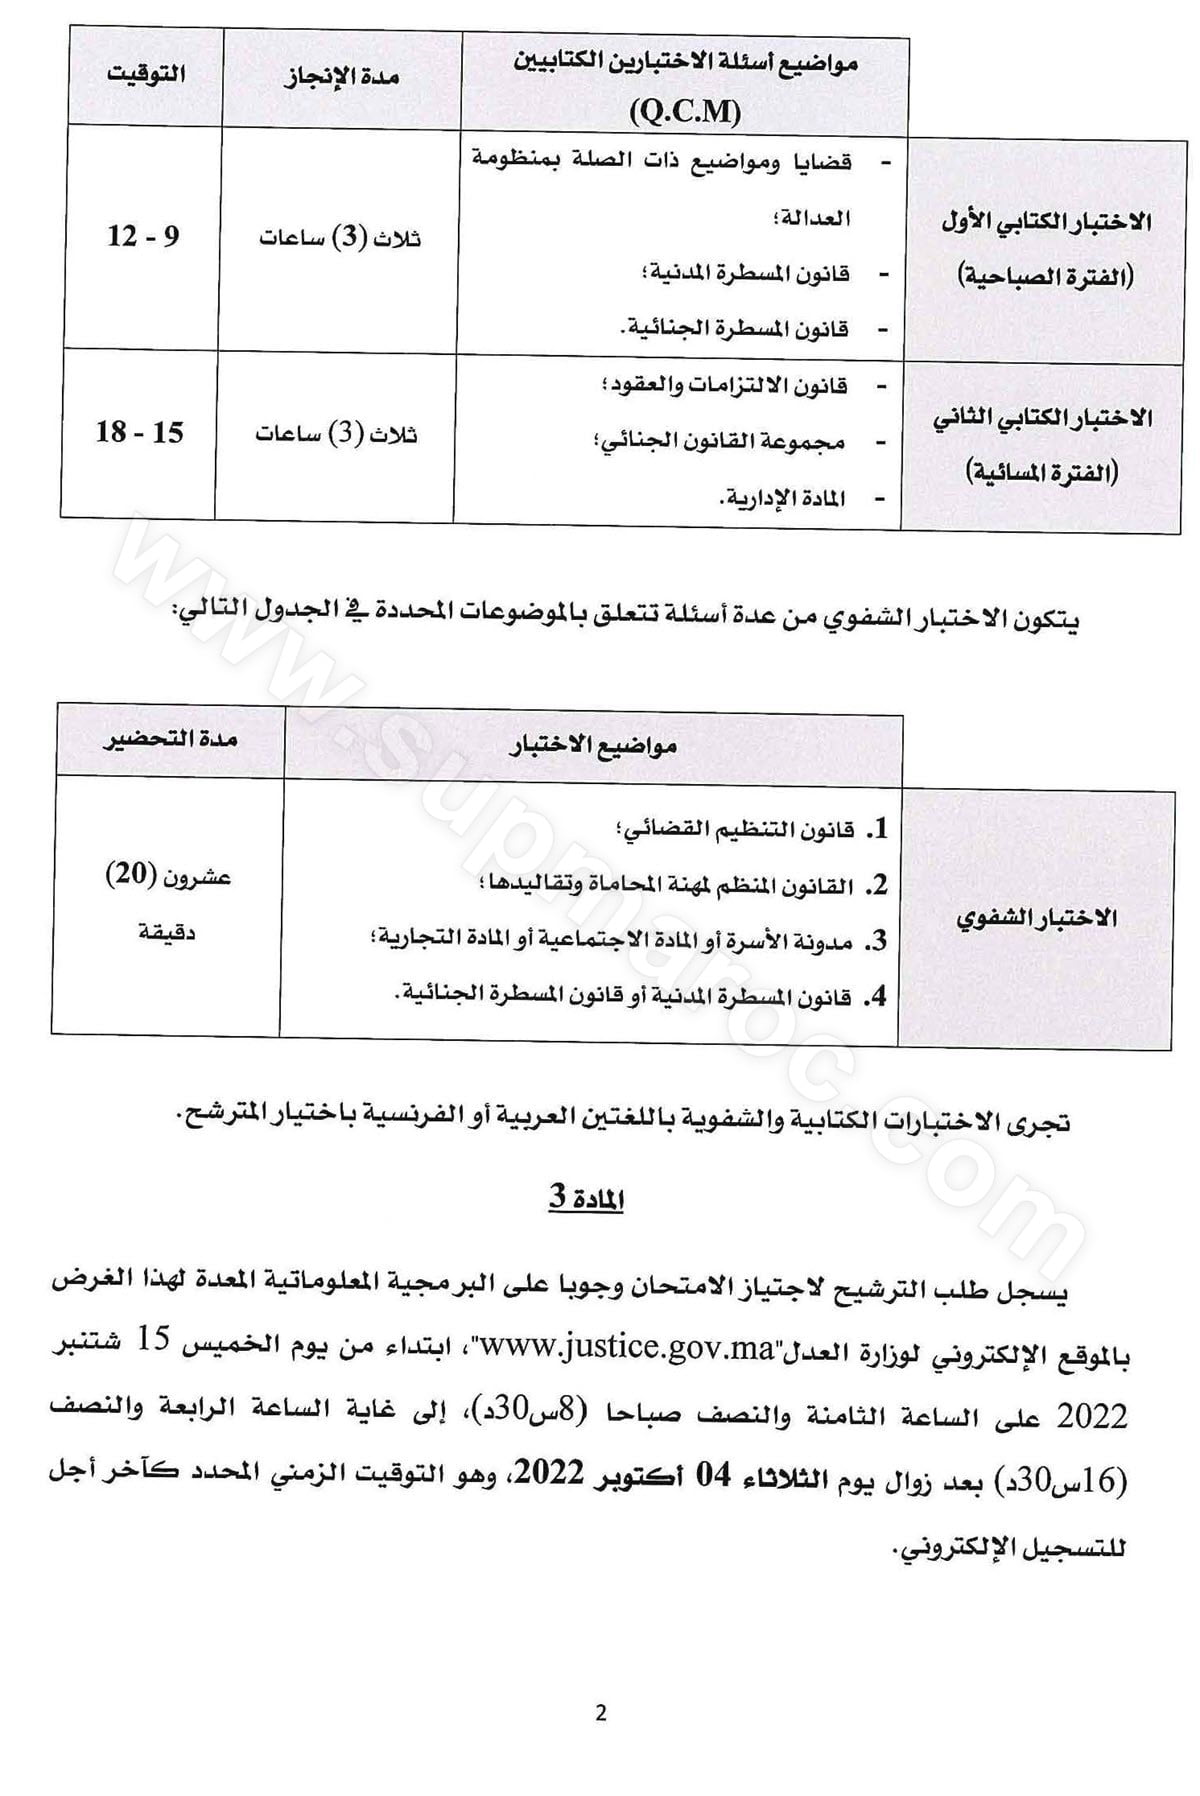 إعلان عن امتحان الأهلية لمزاولة مهنة المحاماة لسنة 2022